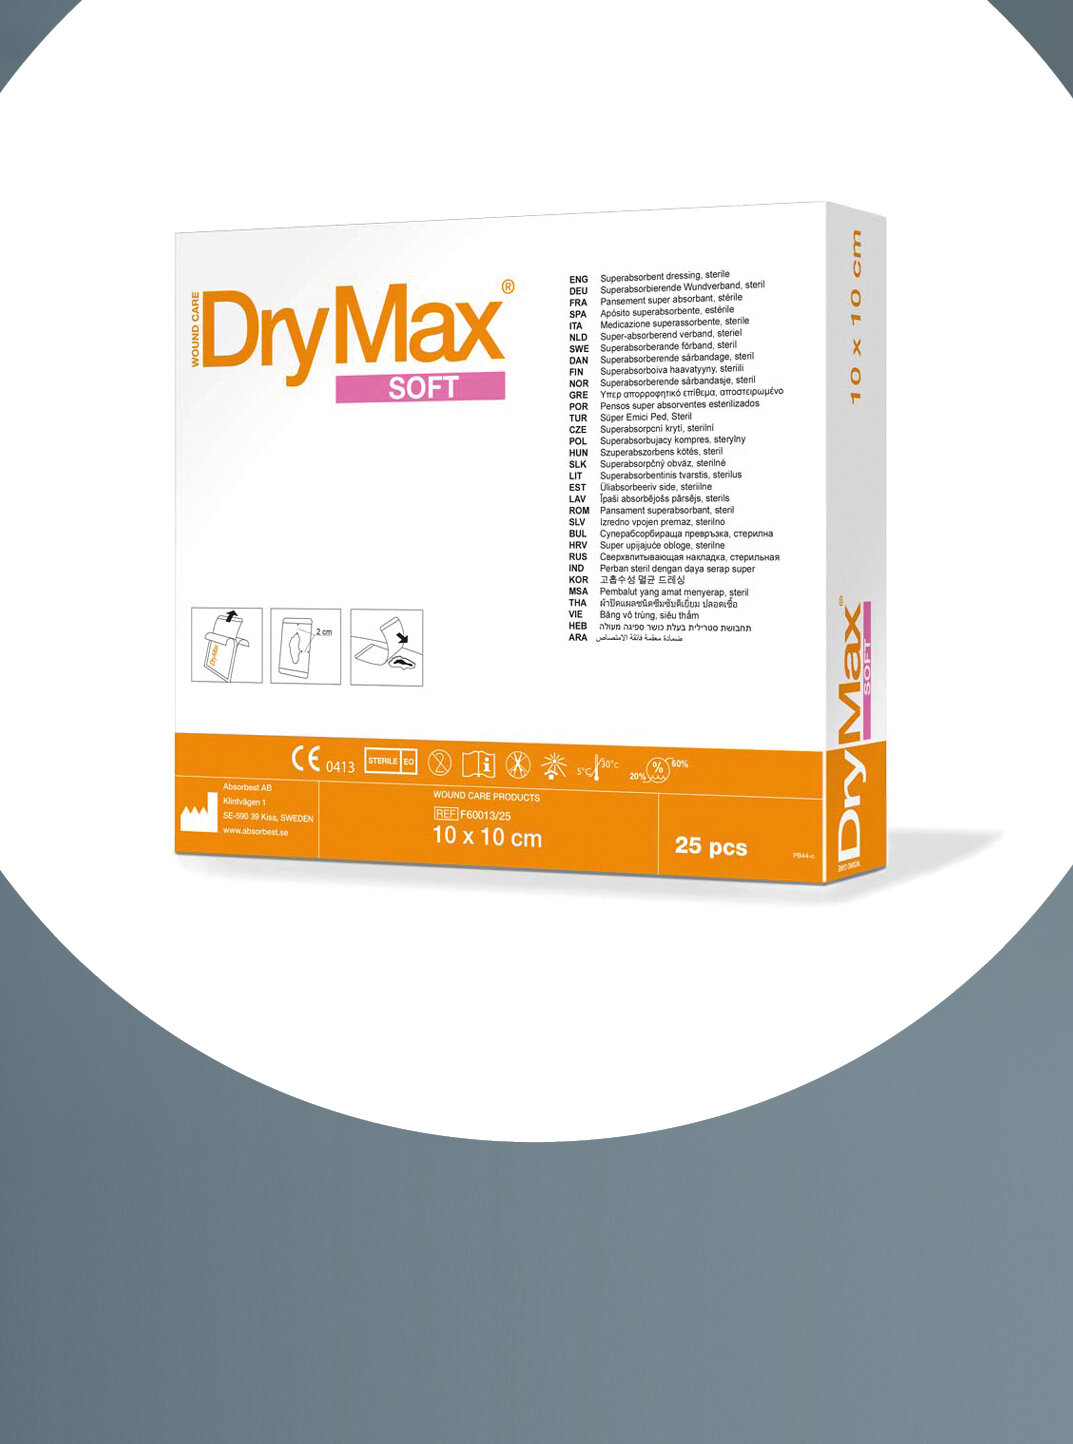 Im Fokus die Verpackung von mediset clinical products DryMax® Soft in der Größe 10 x 10 cm.